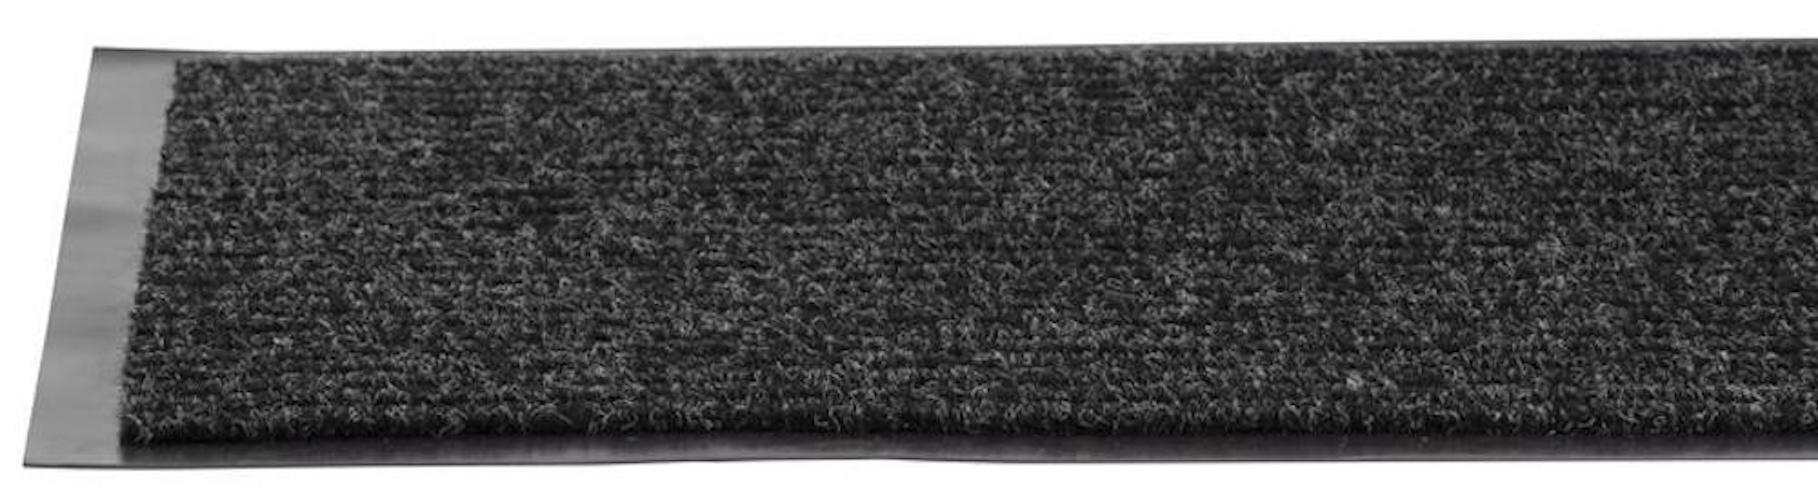 PROREGAL Fußmatte, Schmutzfangmatte 1006, 40x60cm, Schwarz-weiß